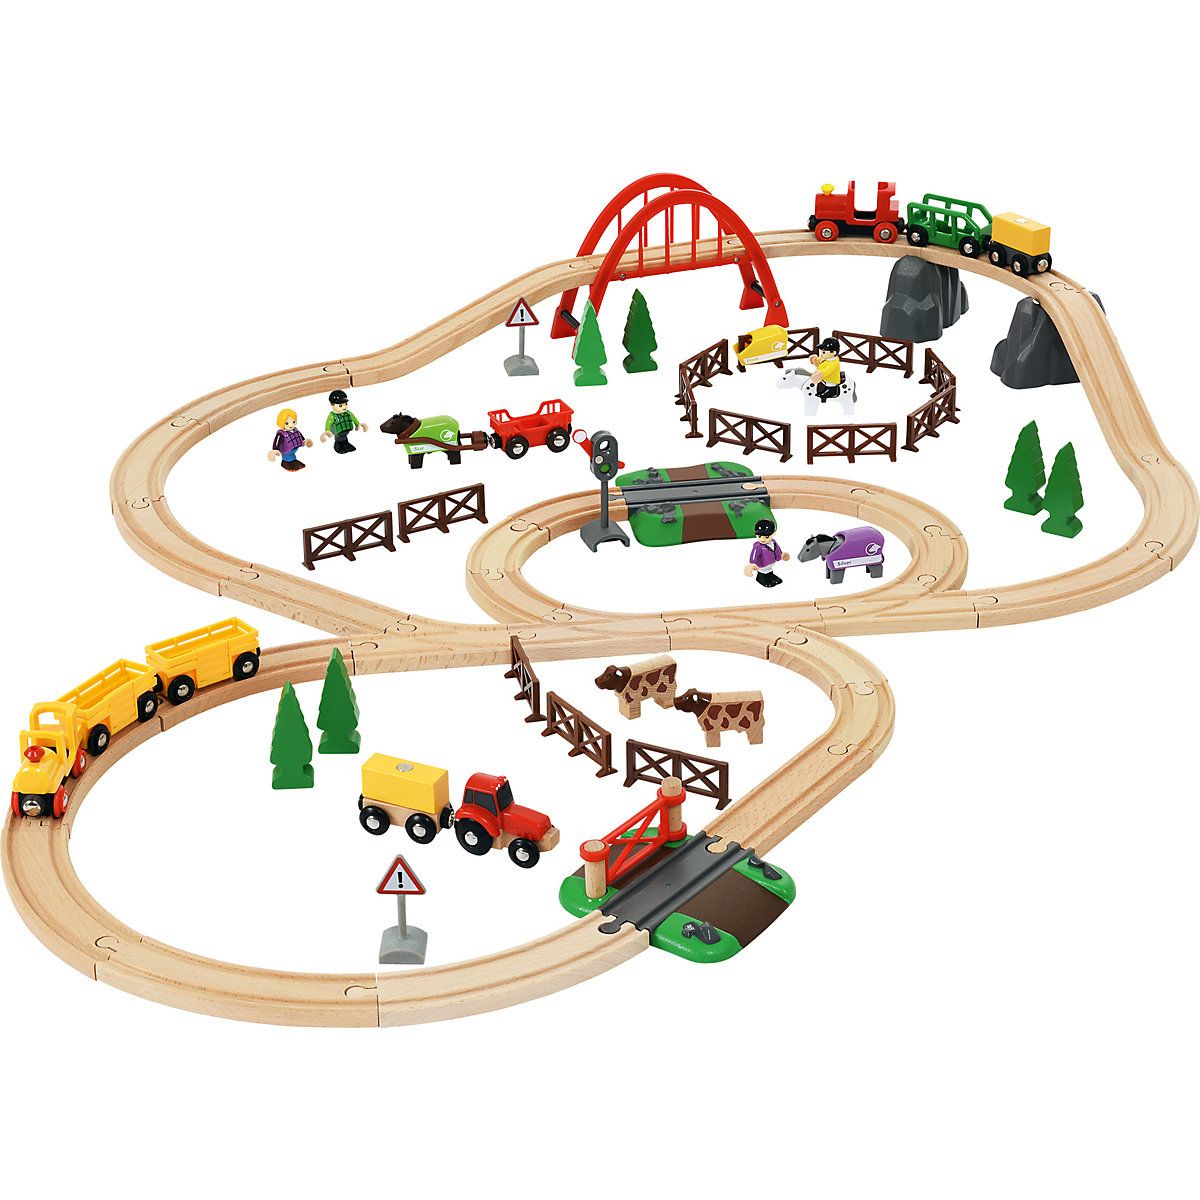 10 лучших детских железных дорог - рейтинг 2021